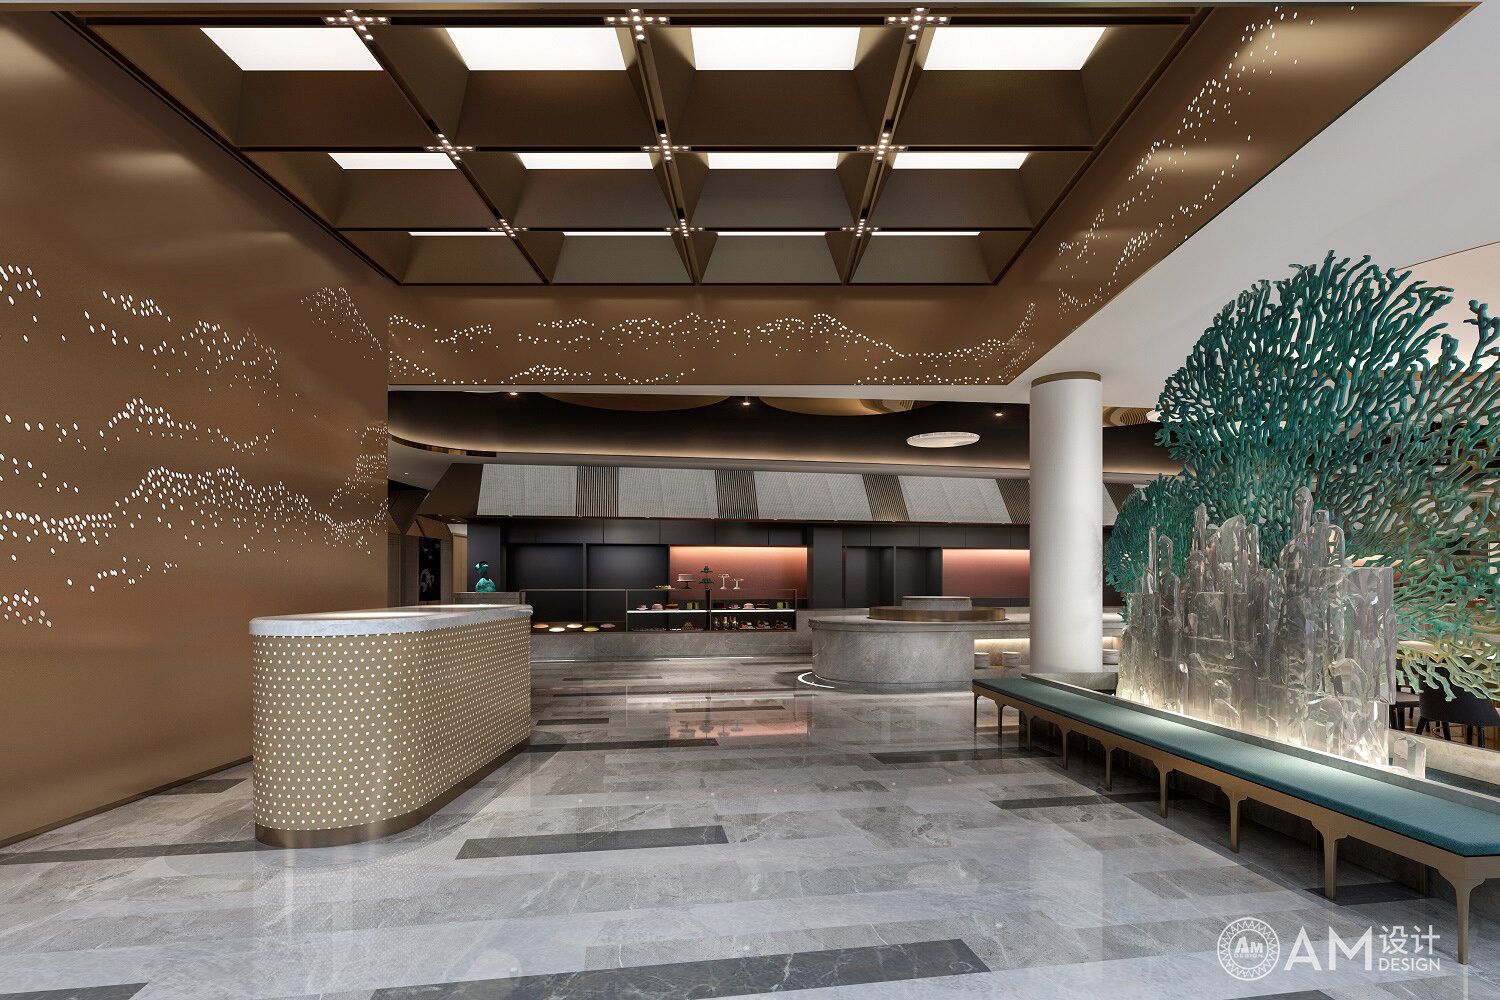 AM | Lobby design of Cangzhou Teppanyaki cafeteria